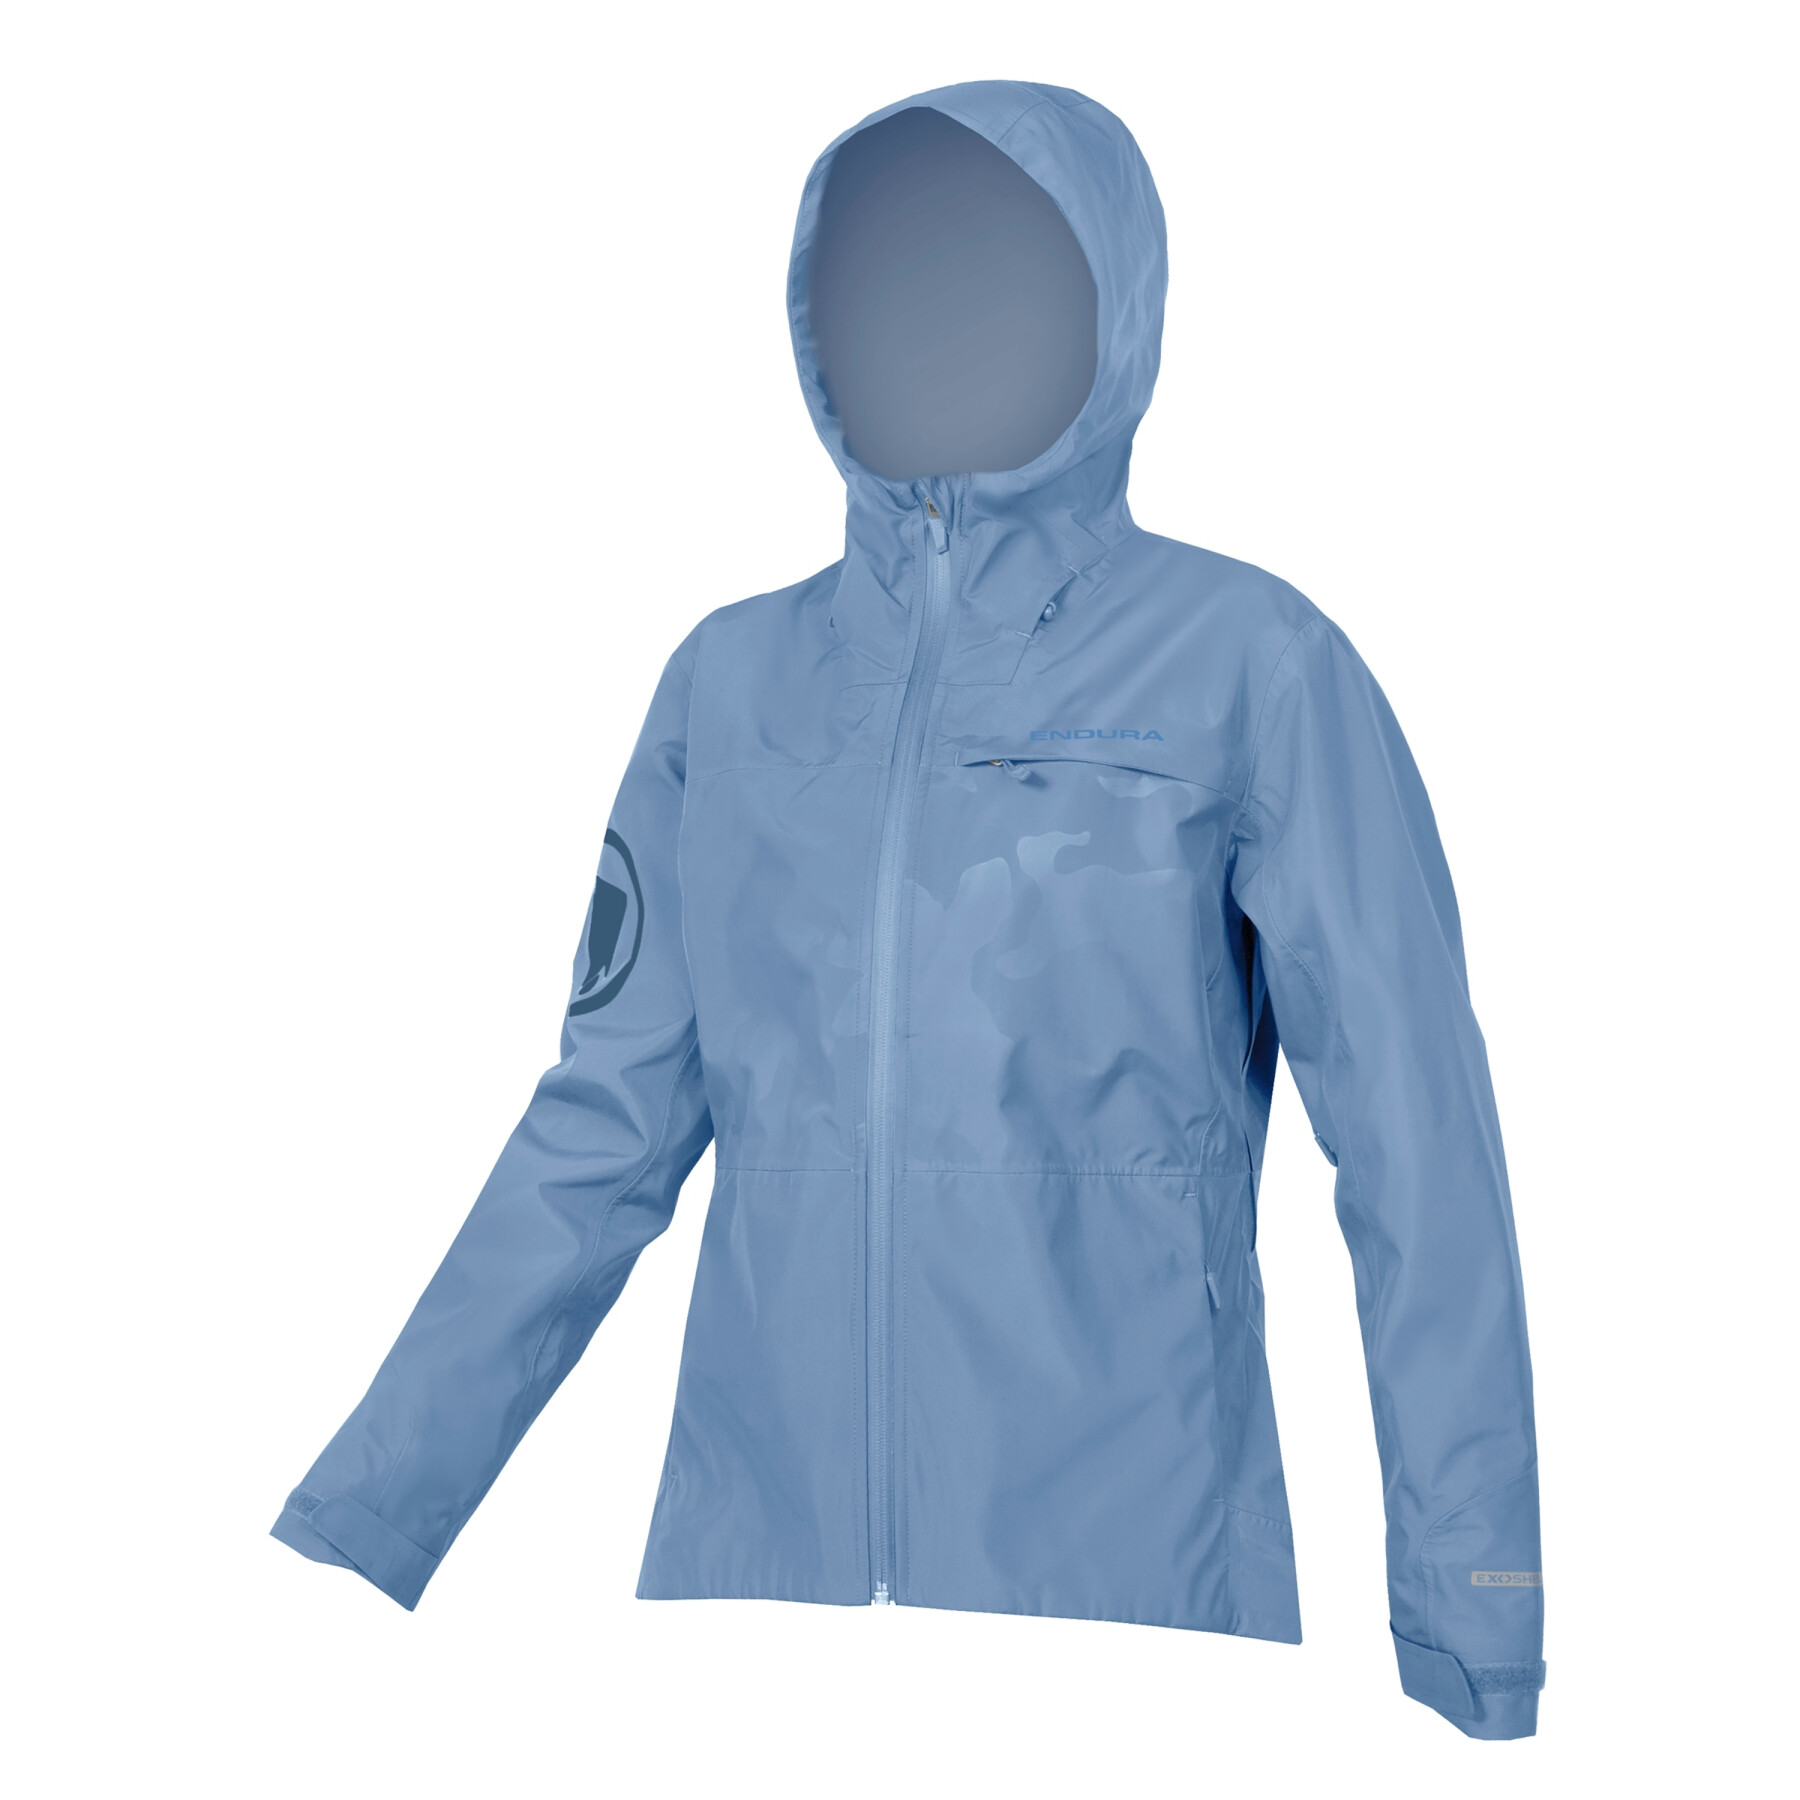 Women's waterproof jacket Endura SingleTrack II